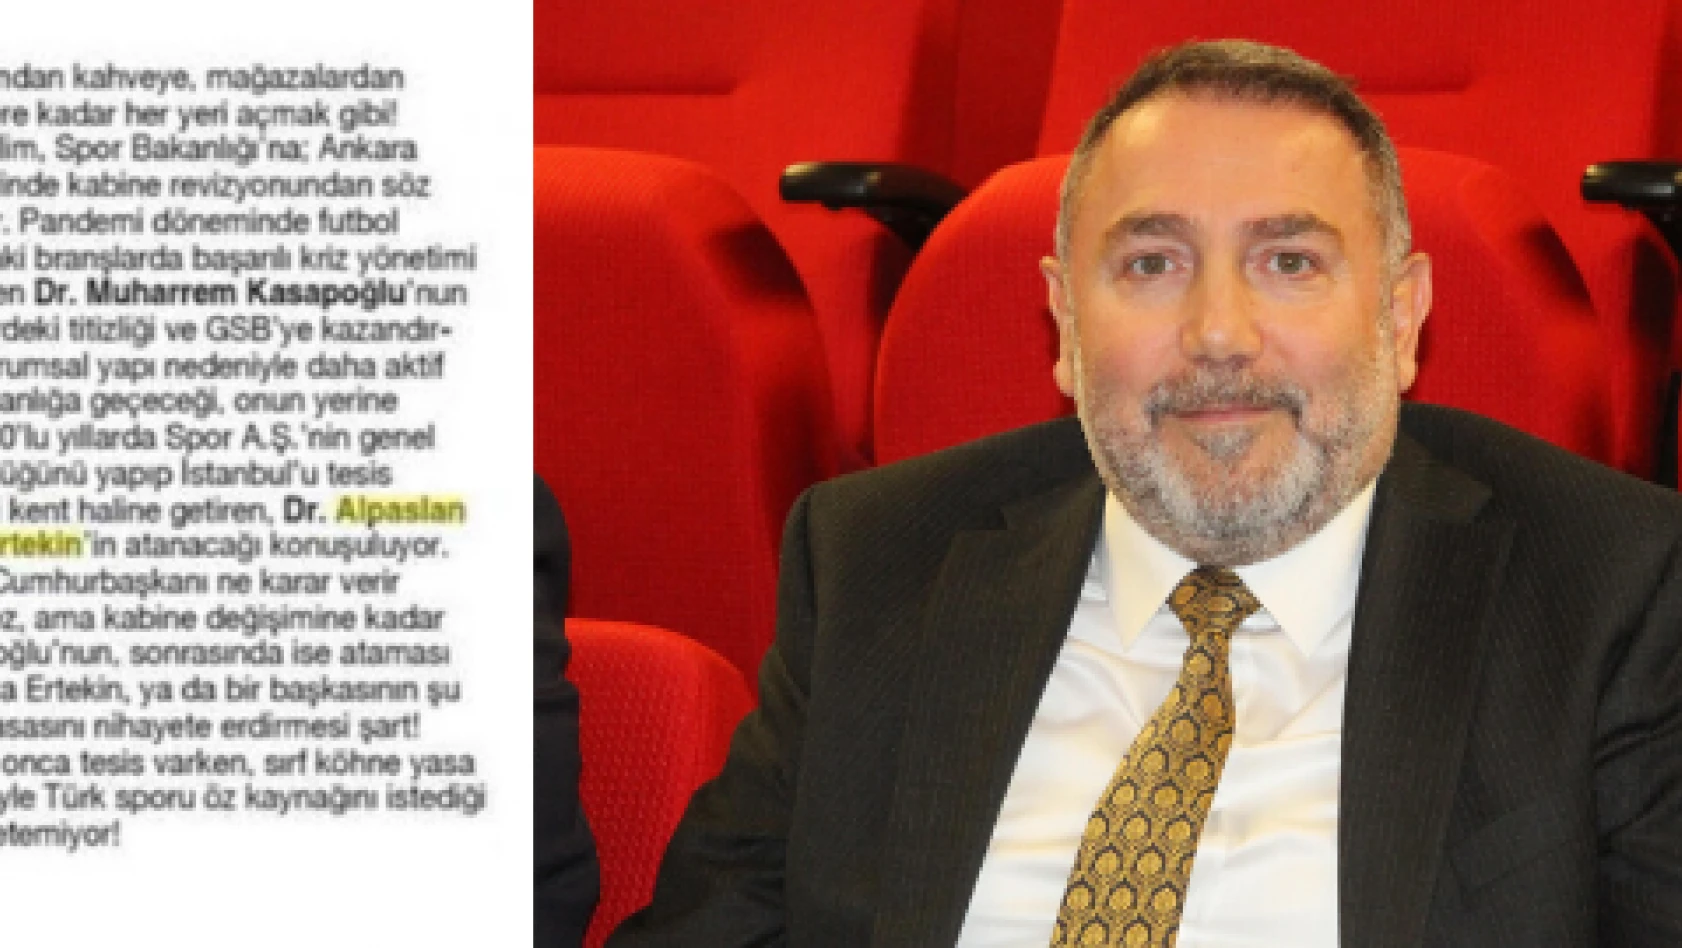 Yeni spor bakanı Erciyes Anadolu Holding CEO'su Ertekin mi olacak?